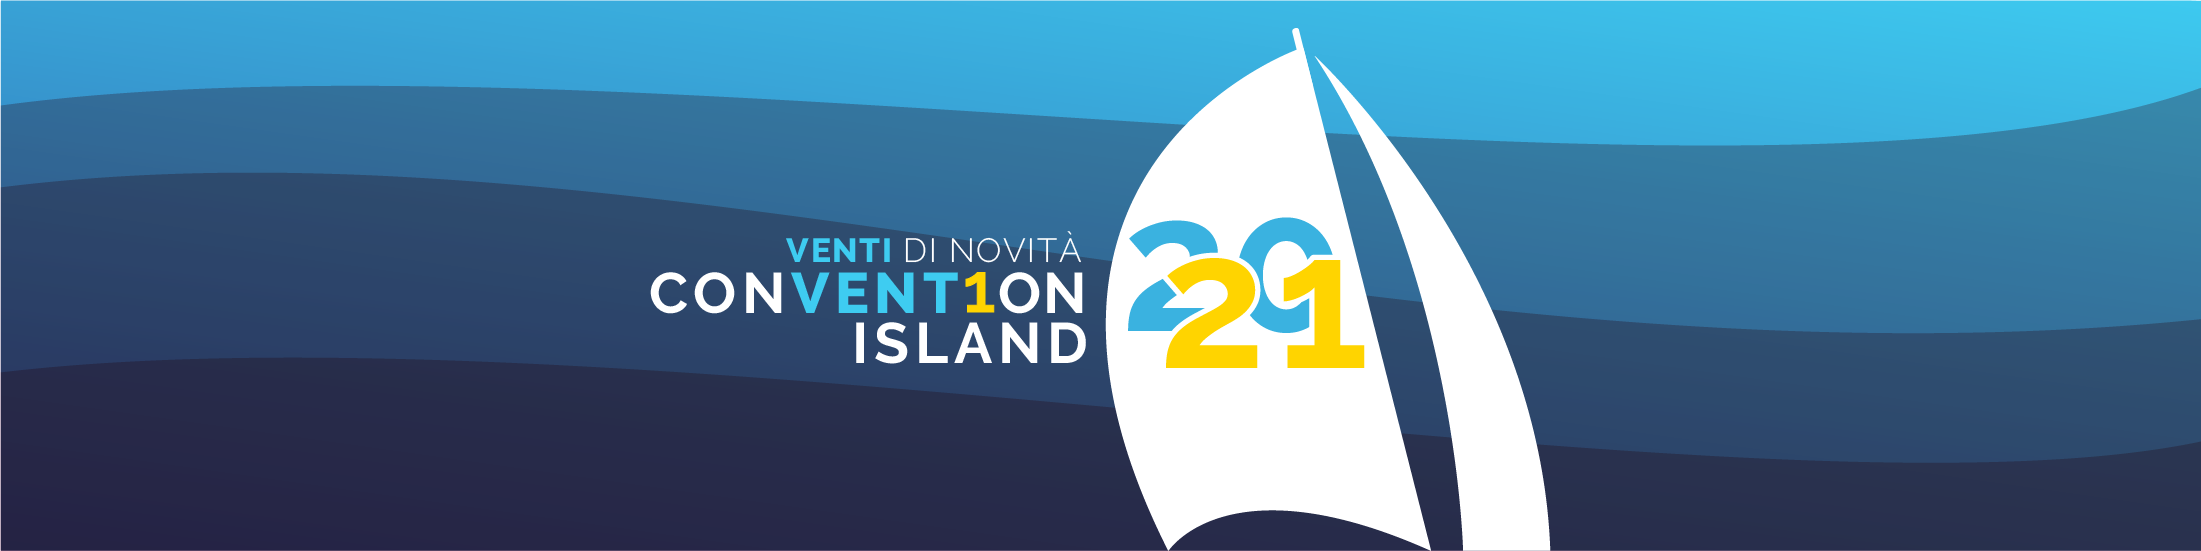 convention-island_sito-2021-2